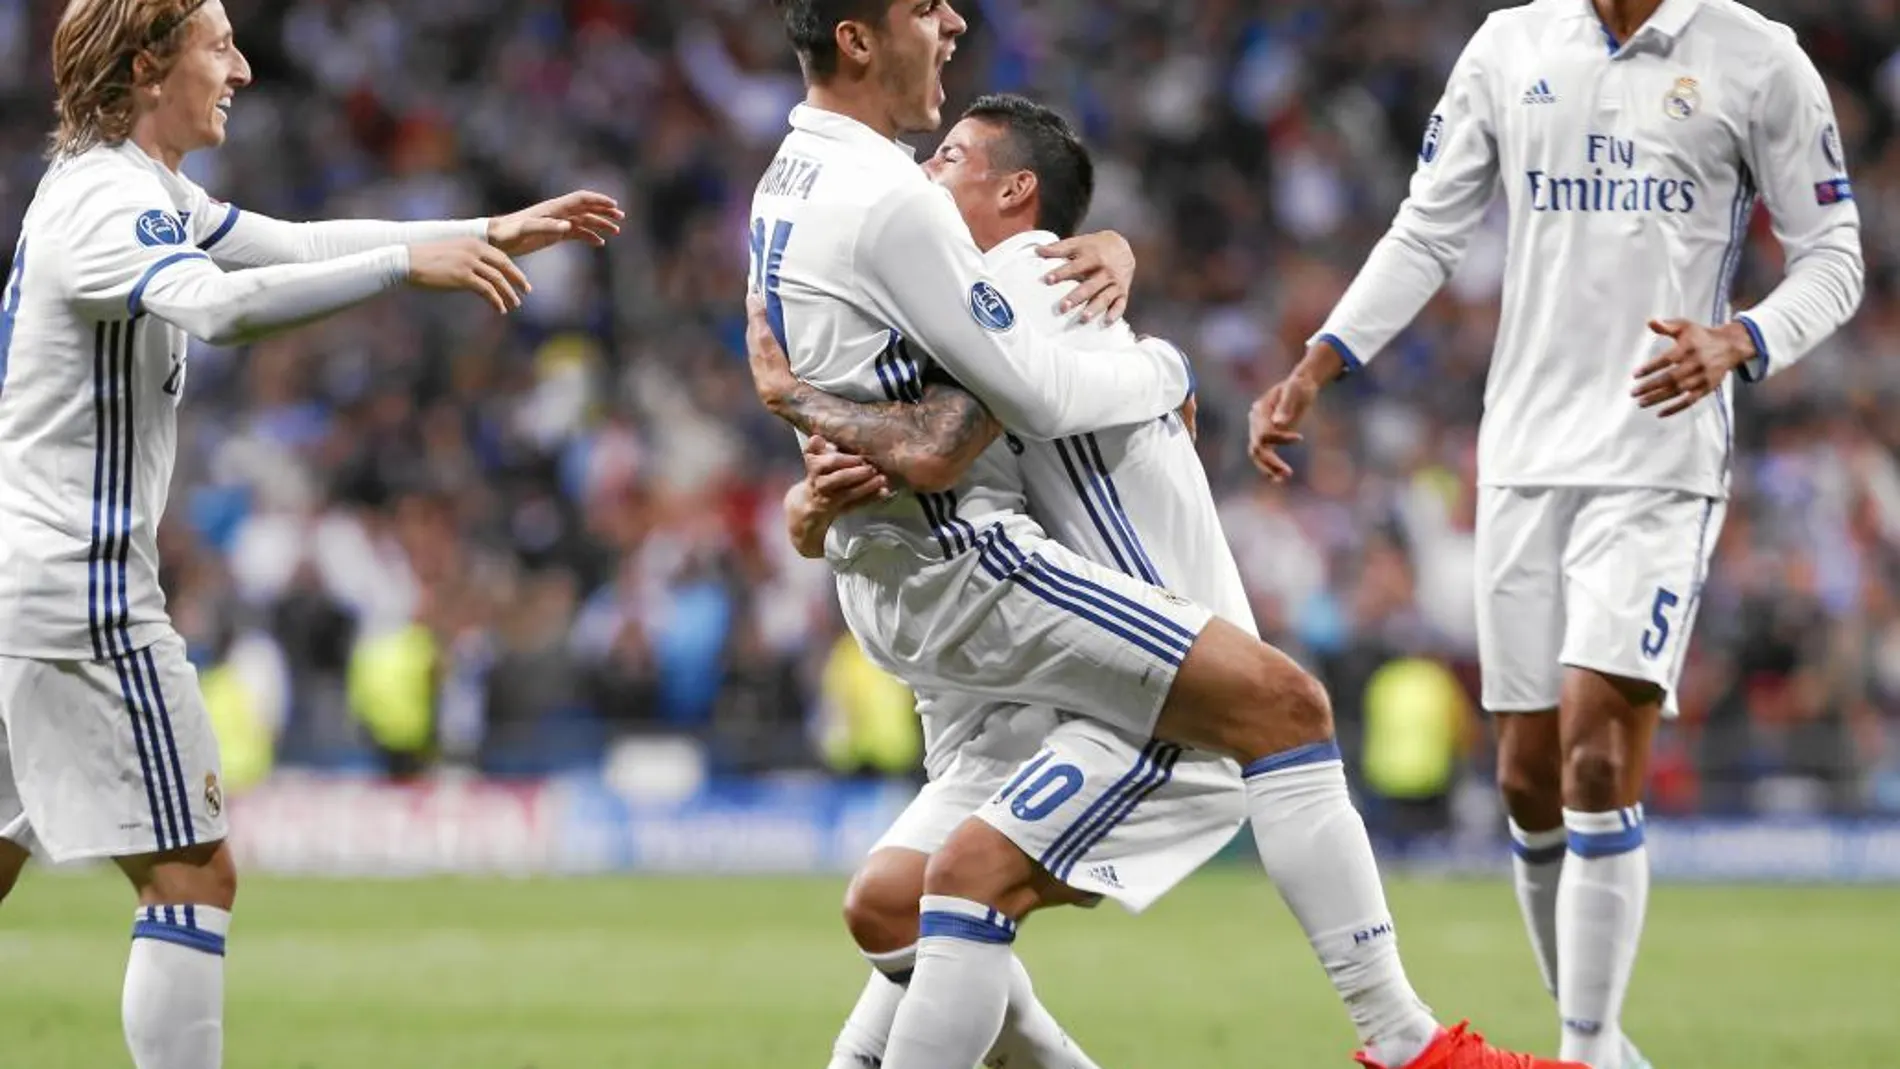 James abraza a Morata, tras el segundo gol del Madrid. El primero dio el pase y el segundo lo remató de cabeza